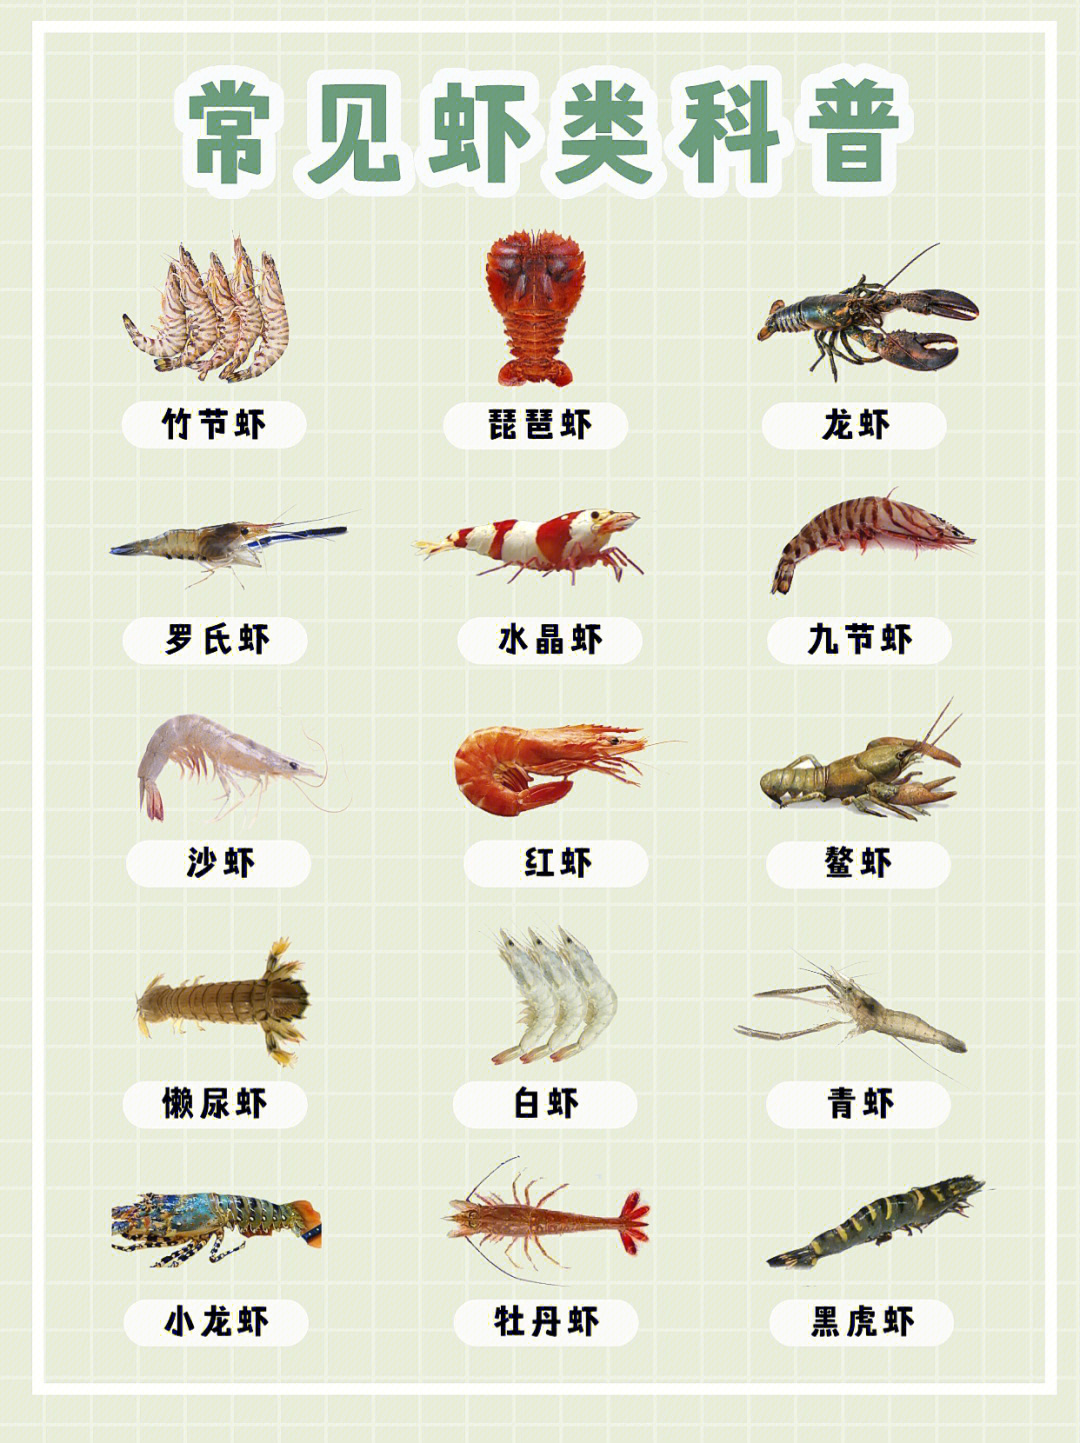 海鲜科普九节虾黑虎虾竹节虾是同种虾吗